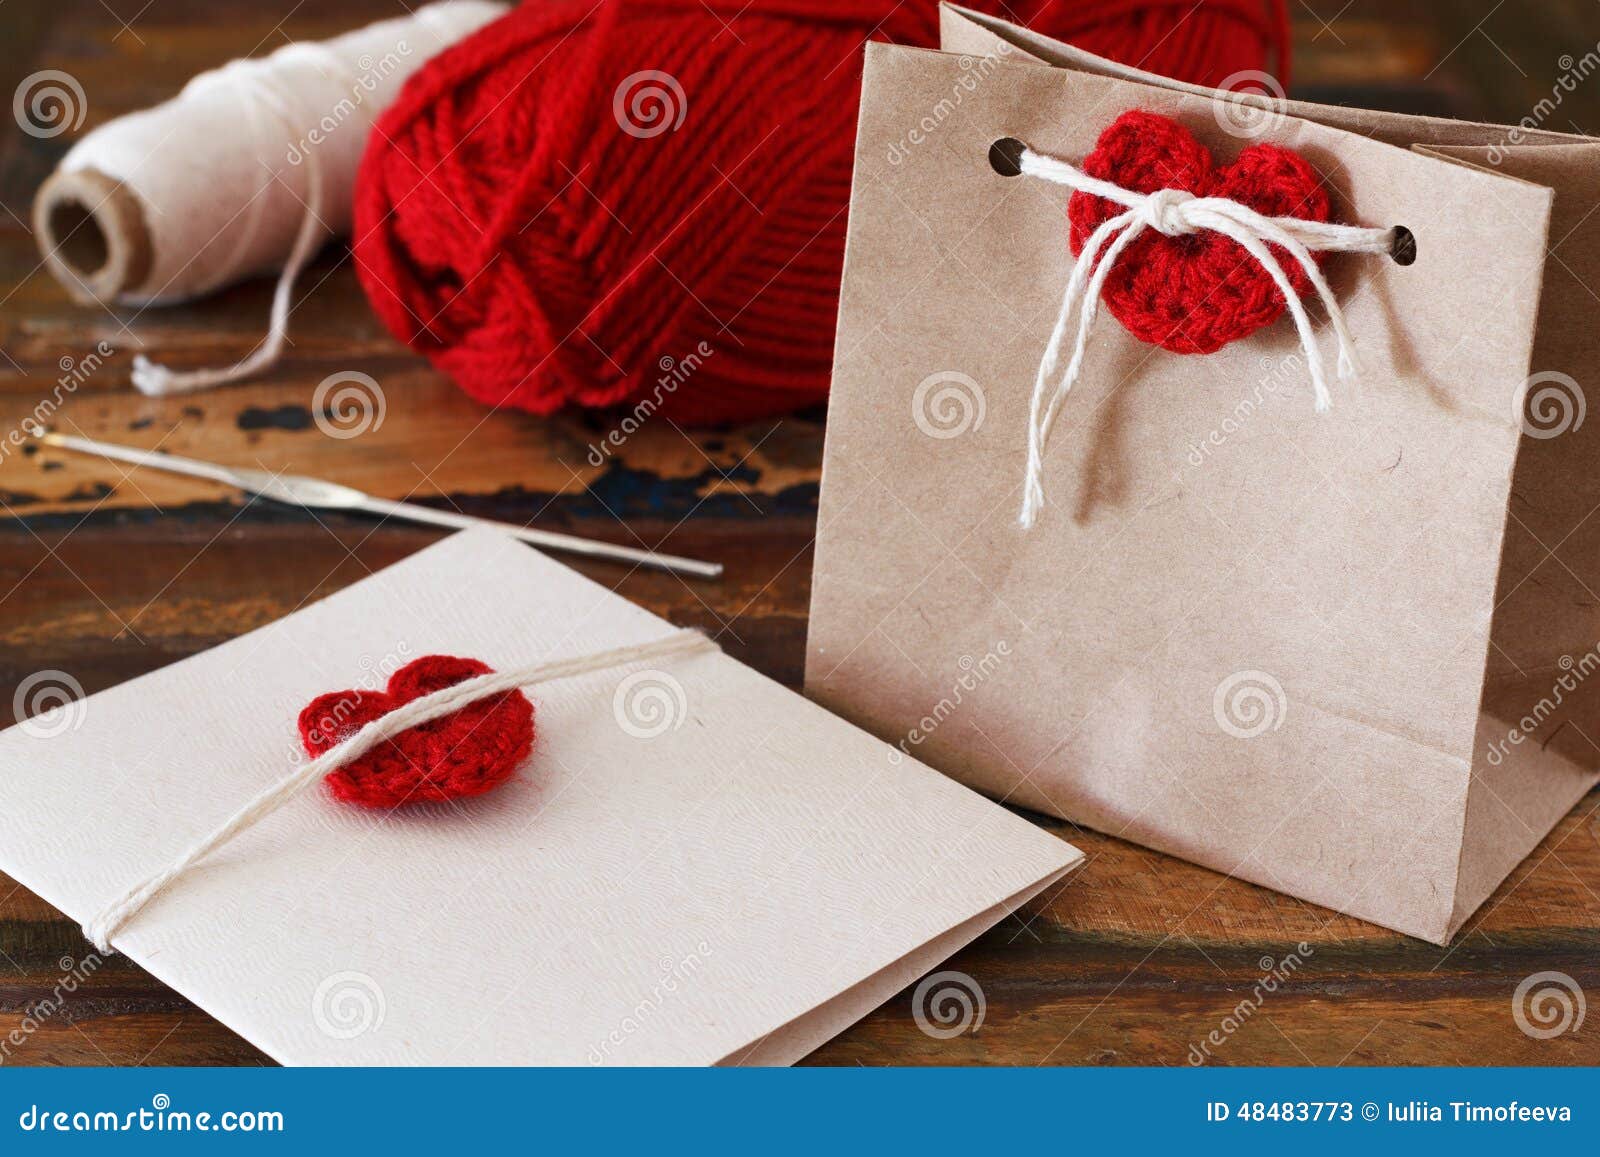 圣徒华伦泰装饰：手工制造钩针编织红色心脏为招呼. 圣徒华伦泰装饰：手工制造贺卡和礼物包裹的钩针编织红色心脏 选择聚焦